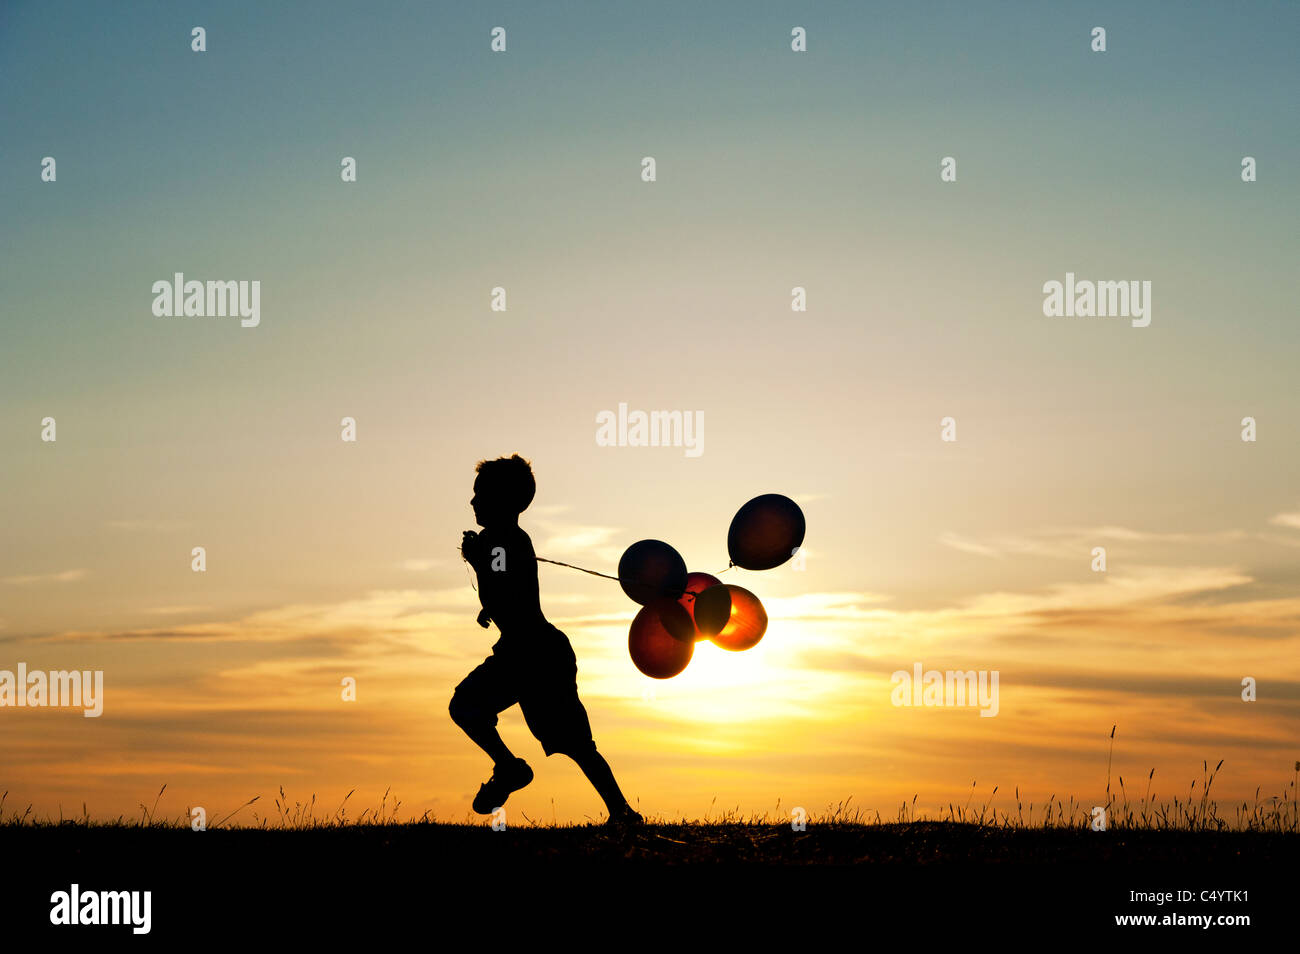 Silhouette d'un jeune garçon courir avec des ballons au coucher du soleil Banque D'Images